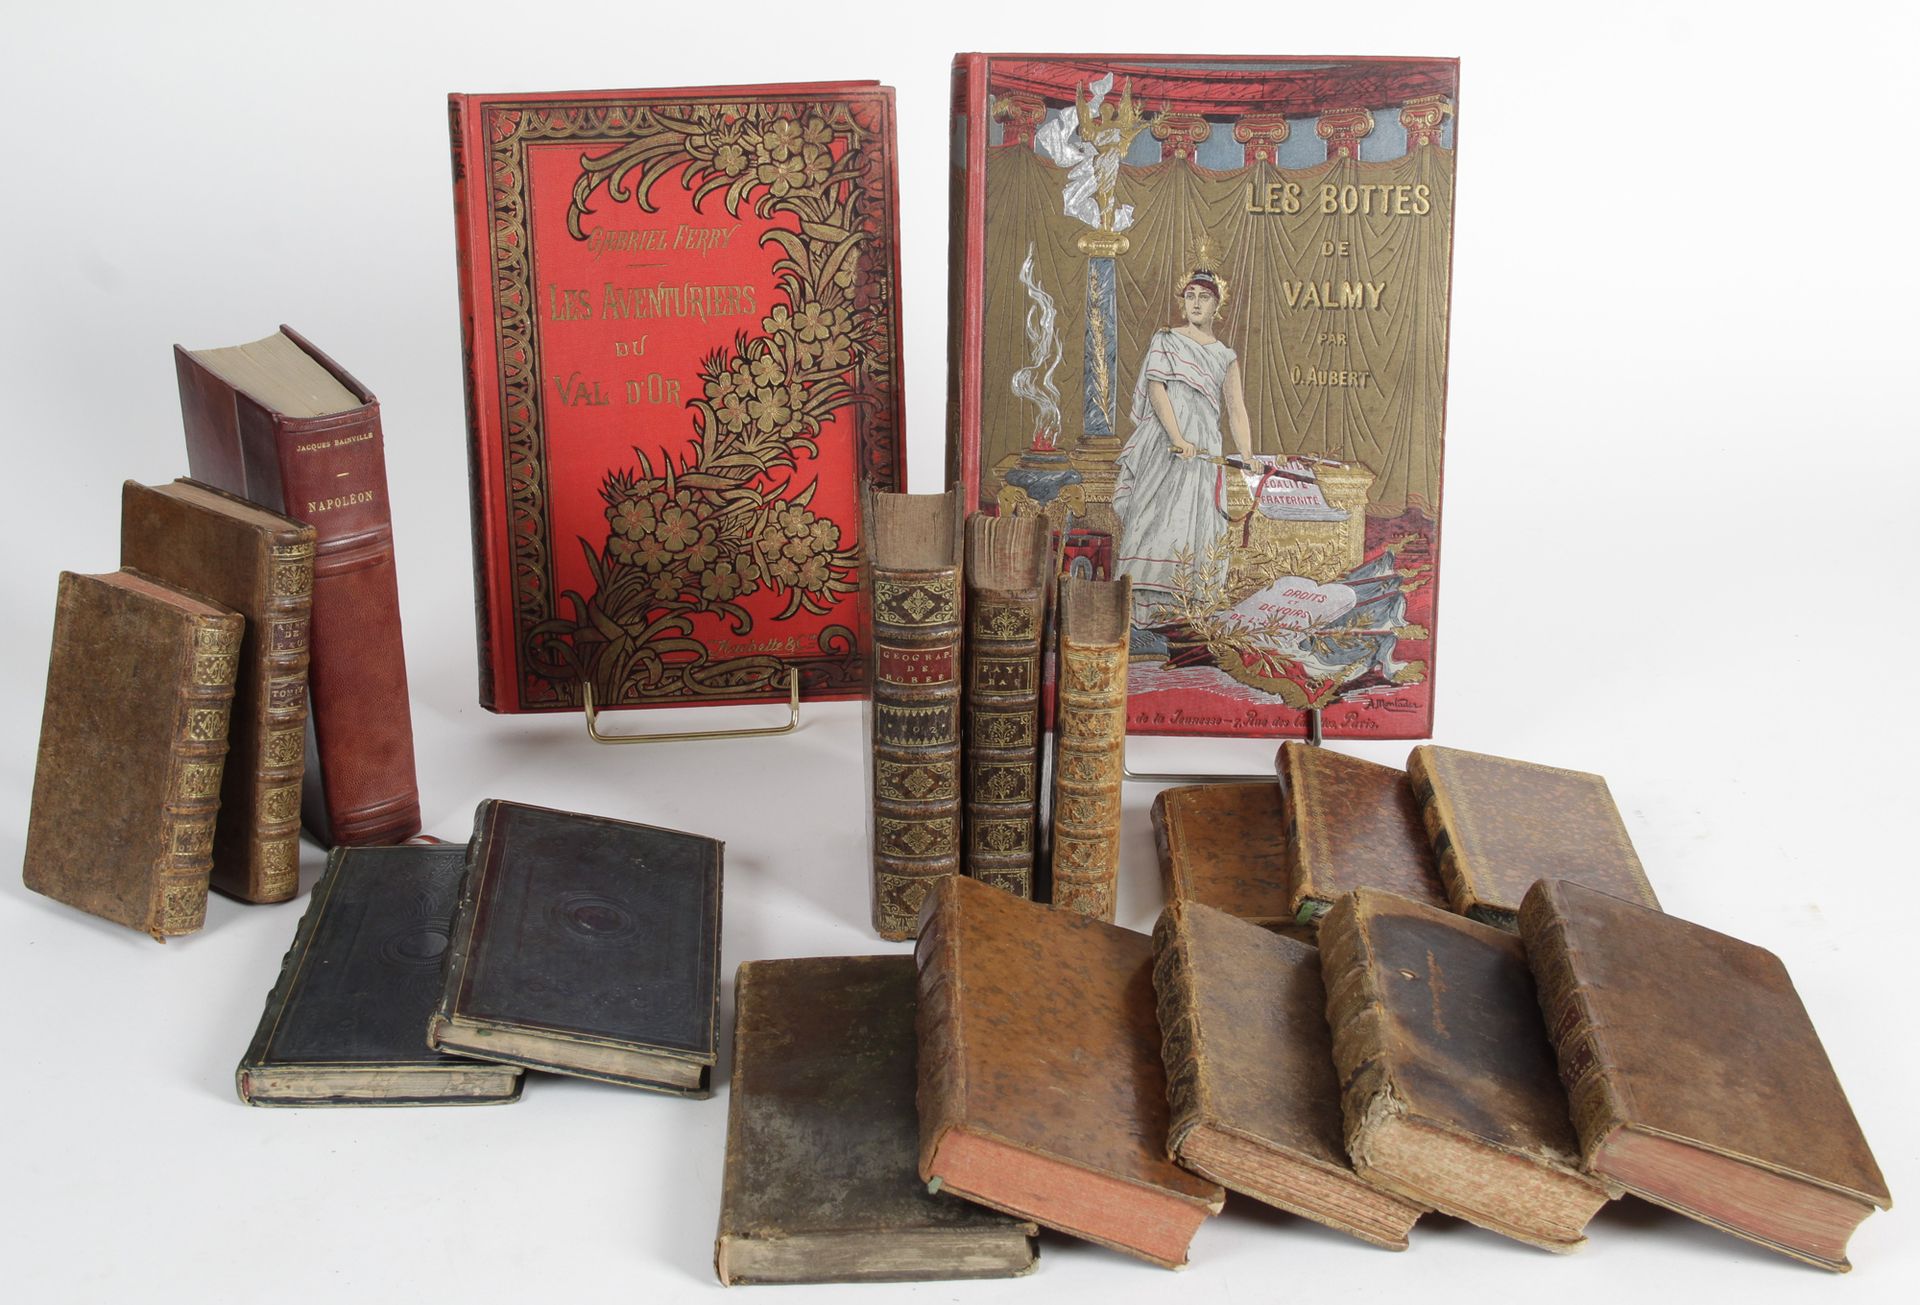 Null Importante lote de libros antiguos de los siglos XVIII y XIX.

-Les bottes &hellip;